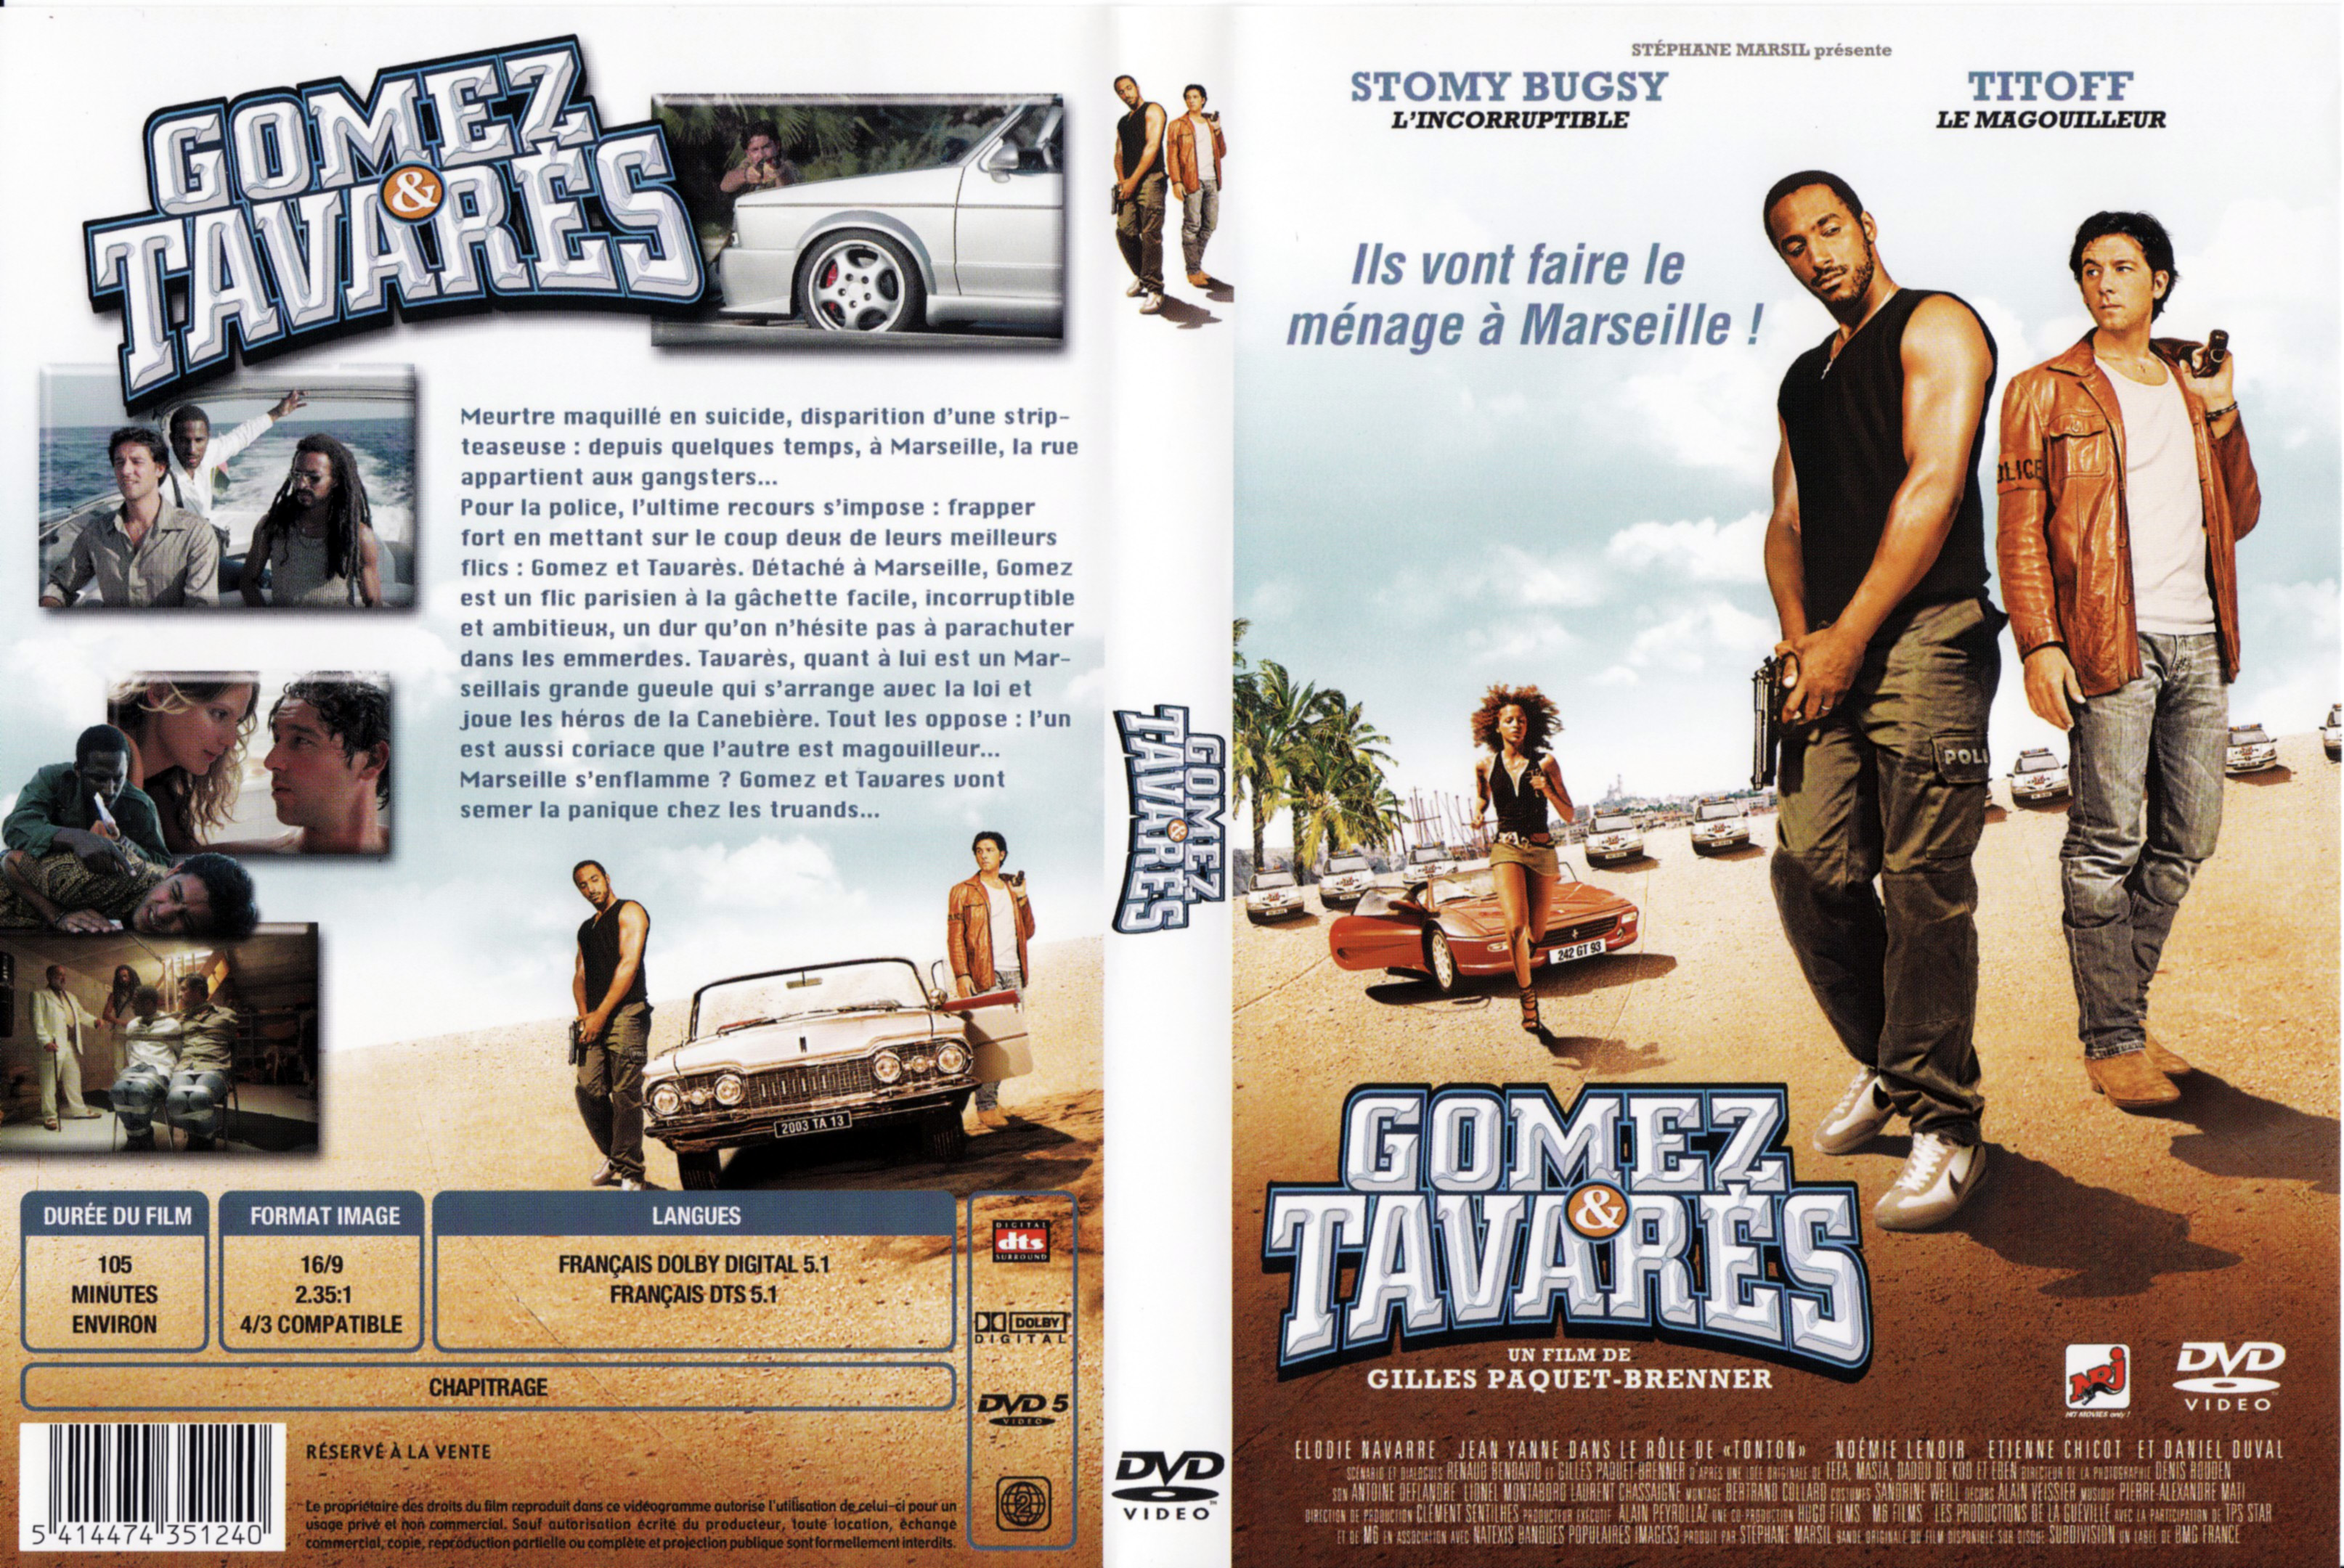 Jaquette DVD Gomez et Tavares v3